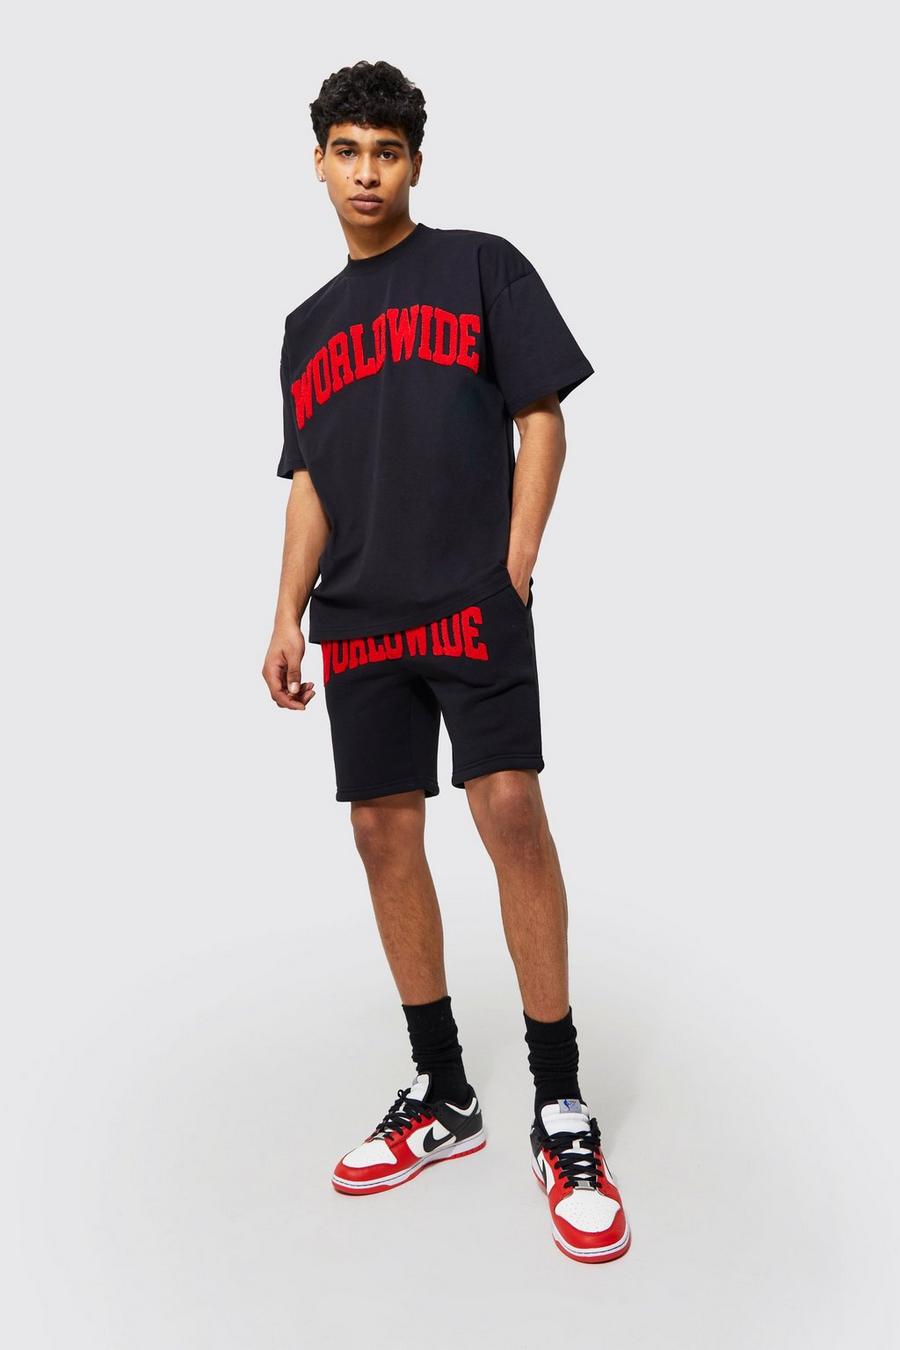 Black Oversized Worldwide T-shirt And Short Set